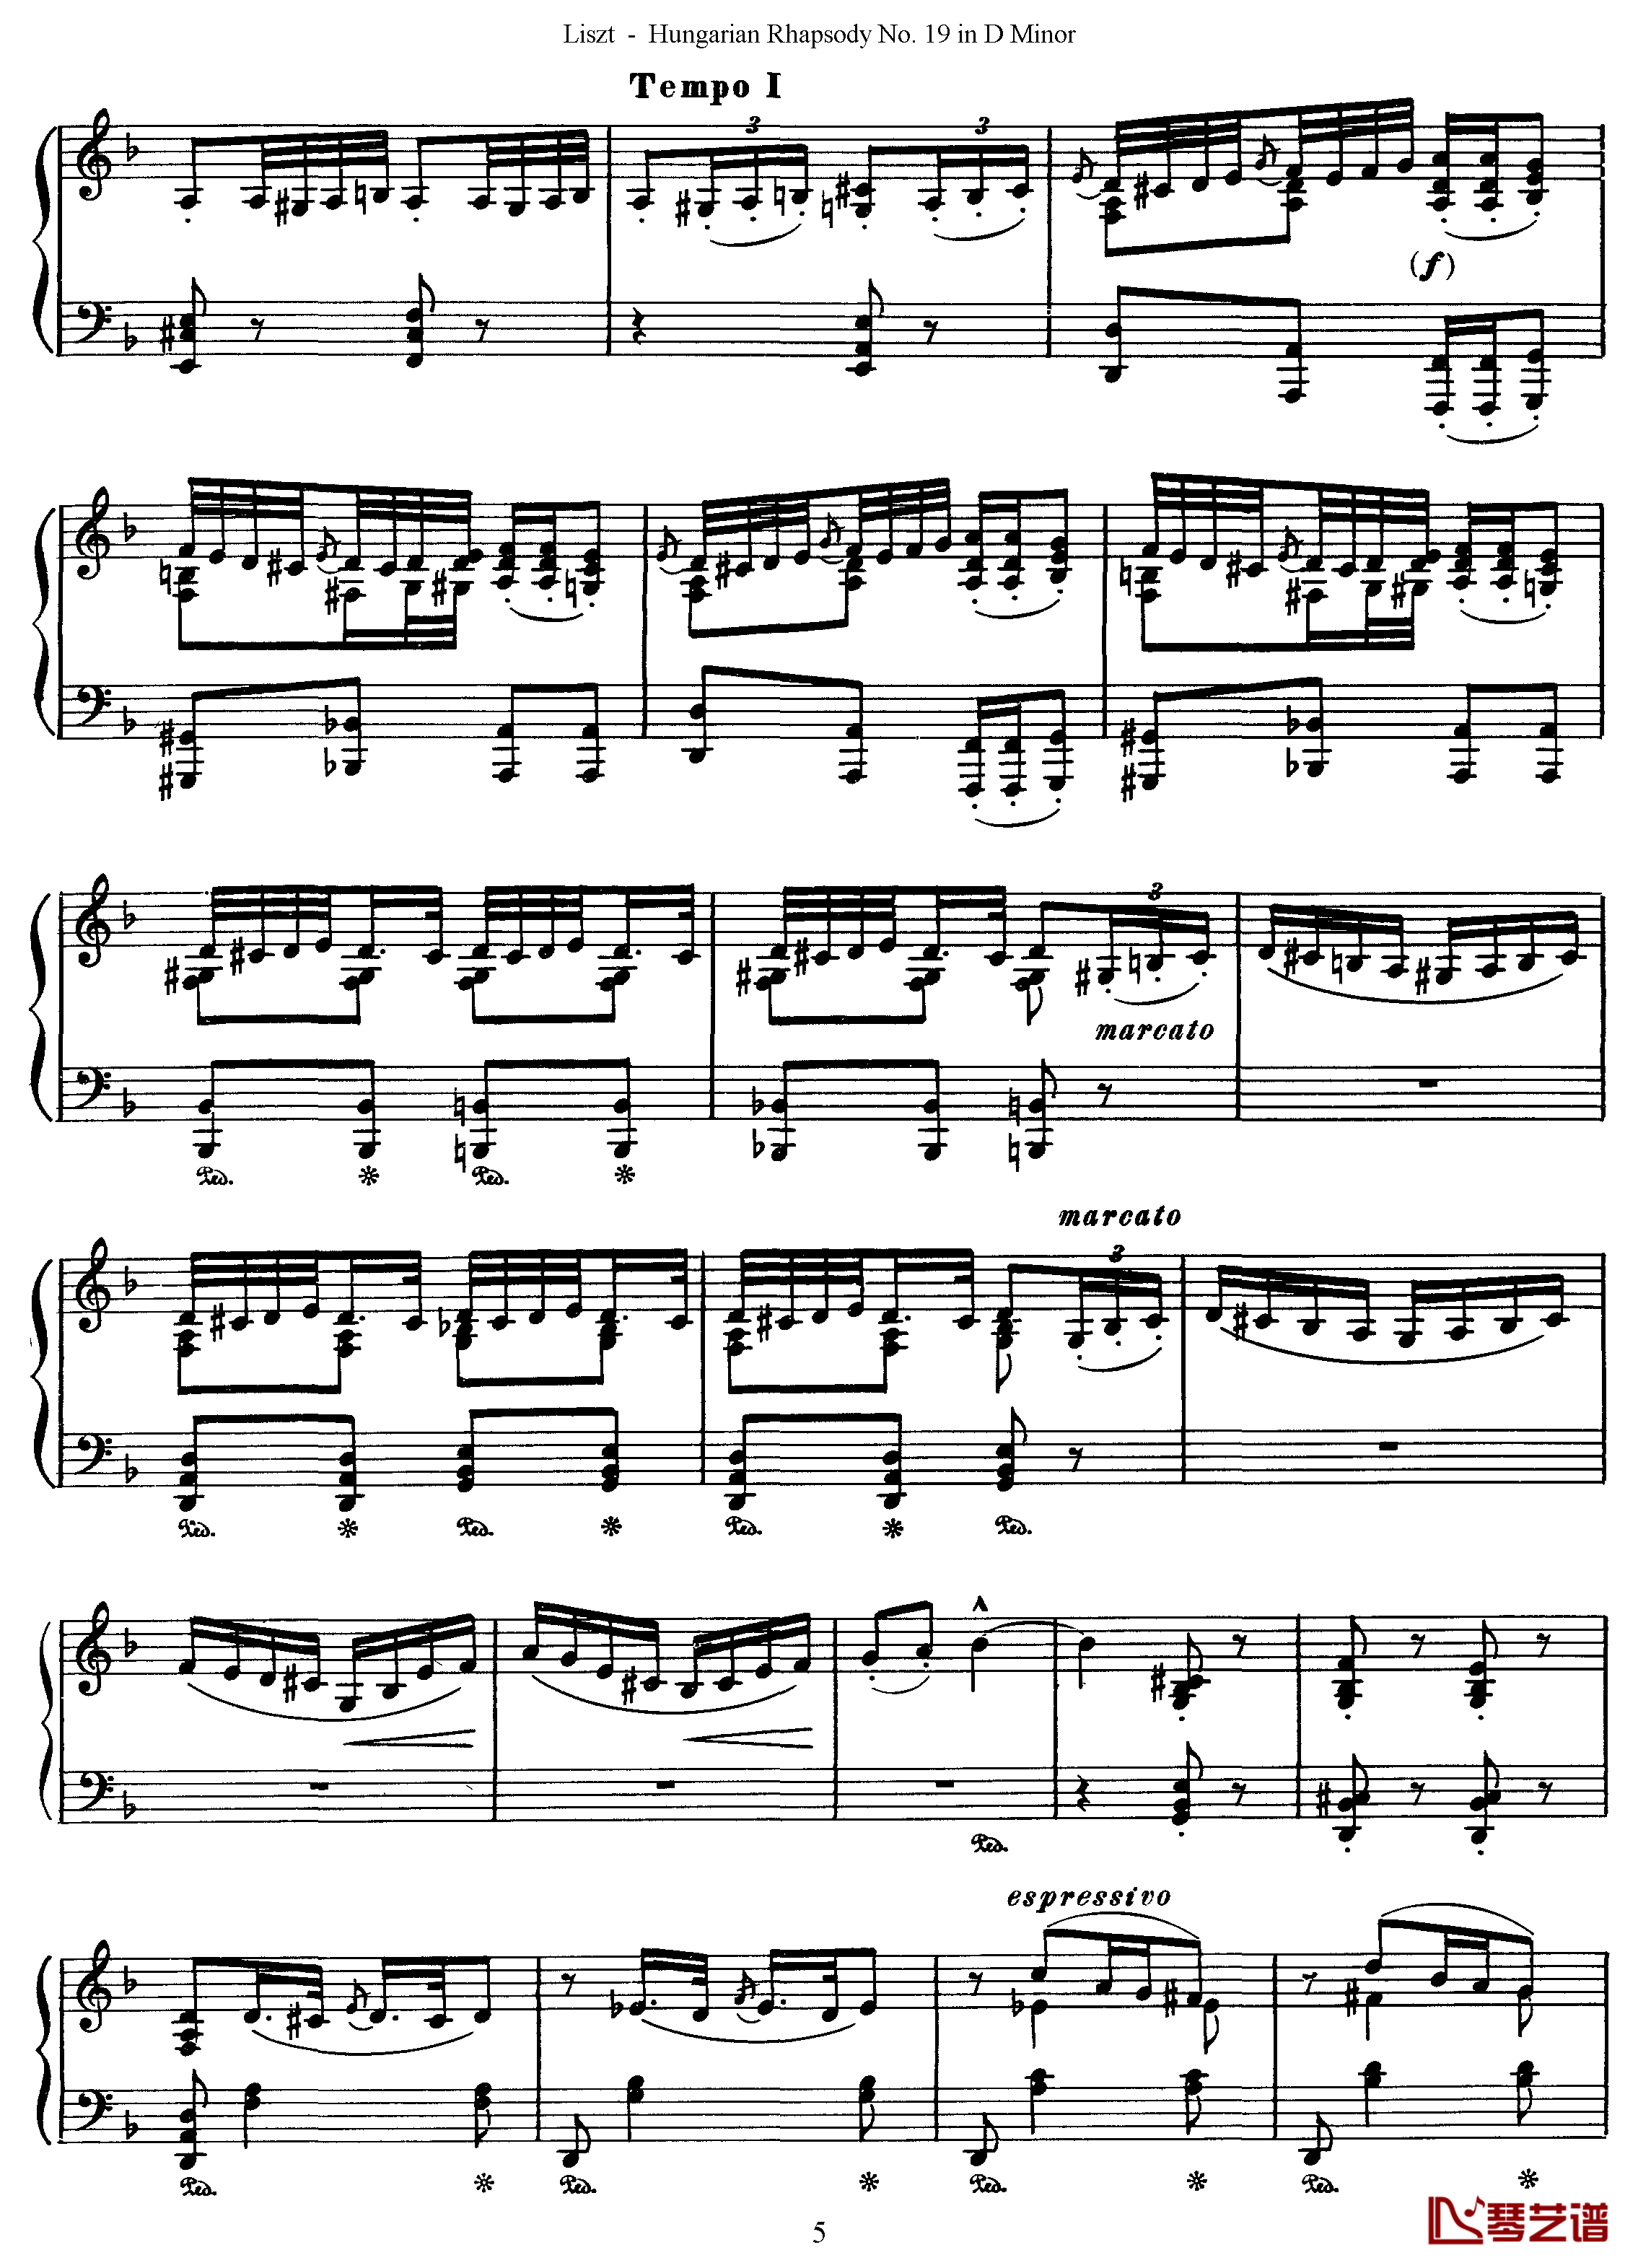 匈牙利狂想曲第19号钢琴谱-最后的狂想-李斯特5